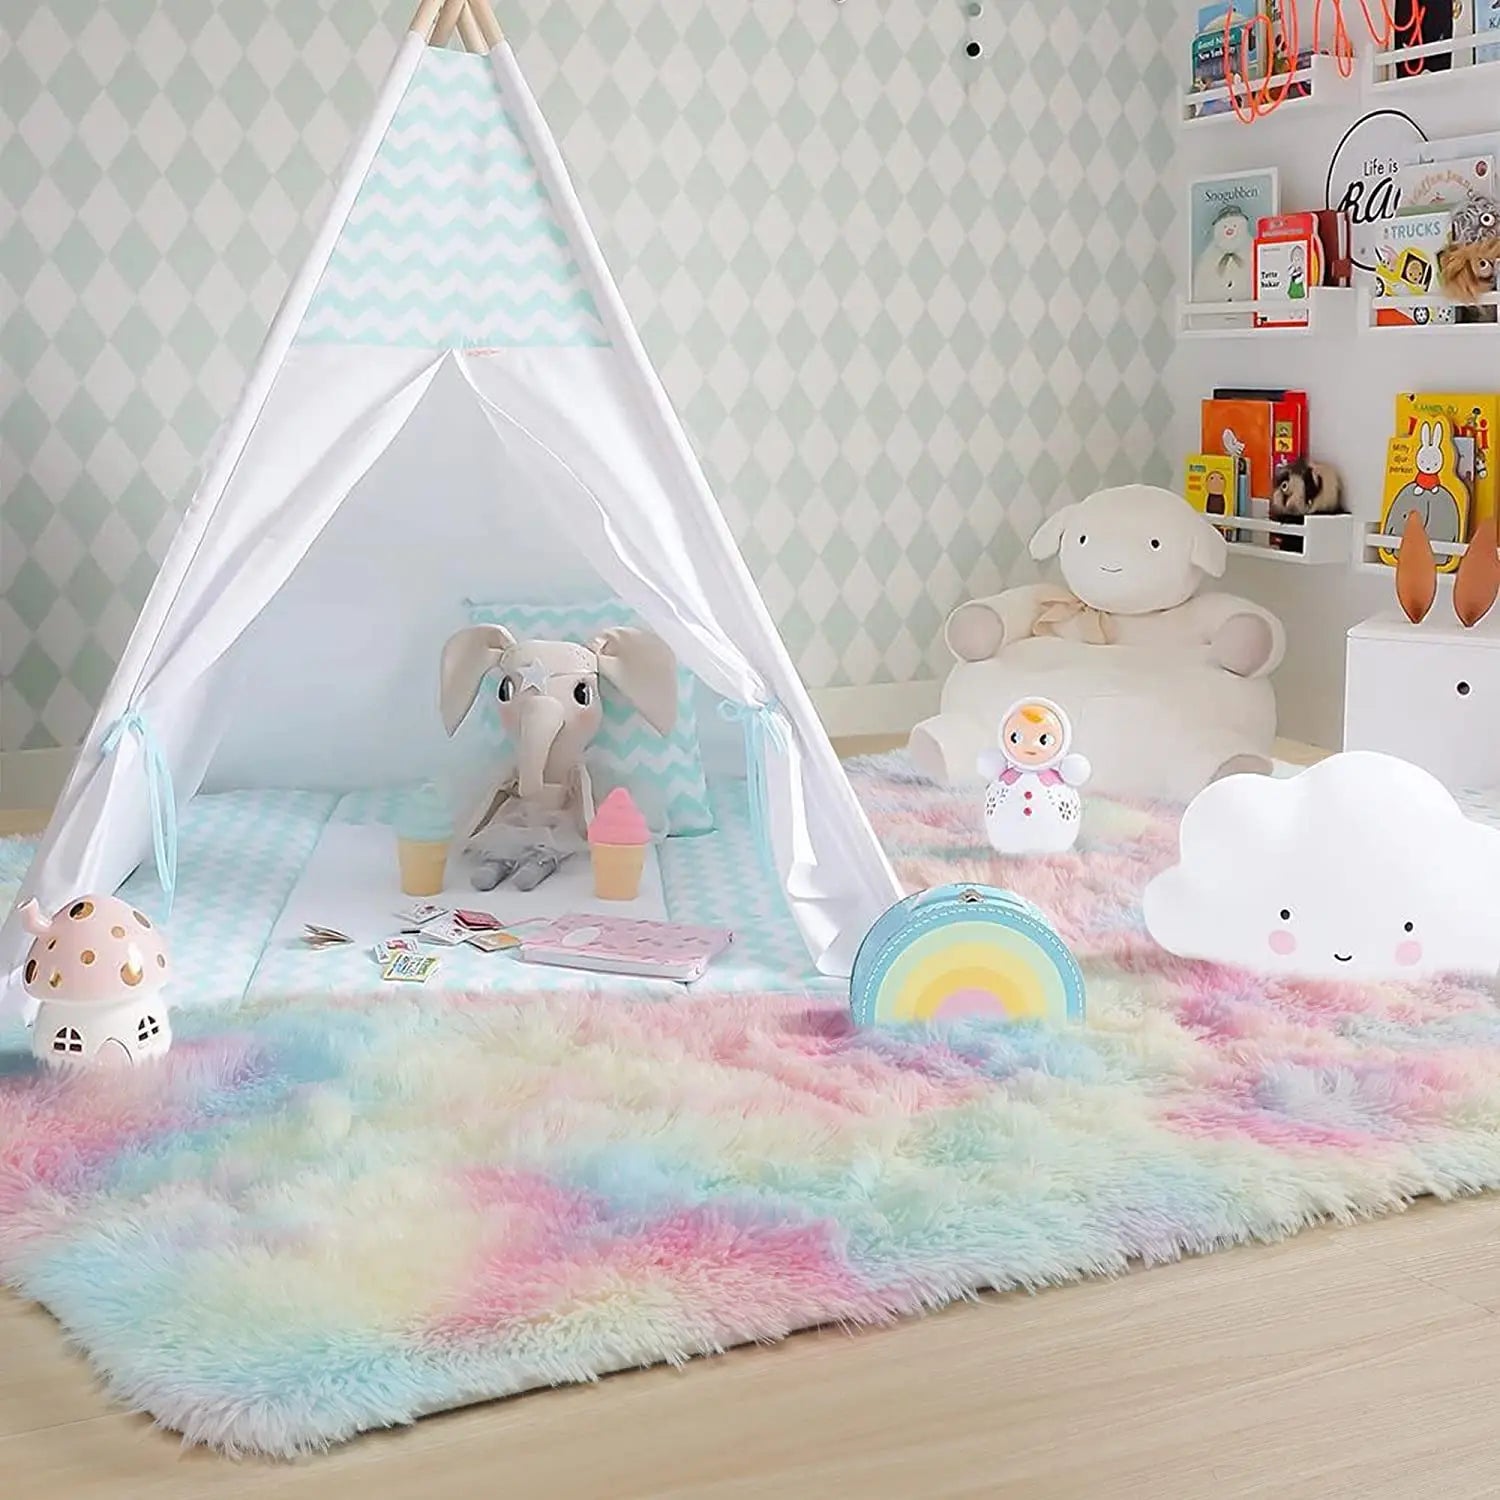 Rainbow Rugs Bedroom Soft Furry Carpets Living Room Kids Baby Room Nursery Playroom Cute Room Decor Area Rug